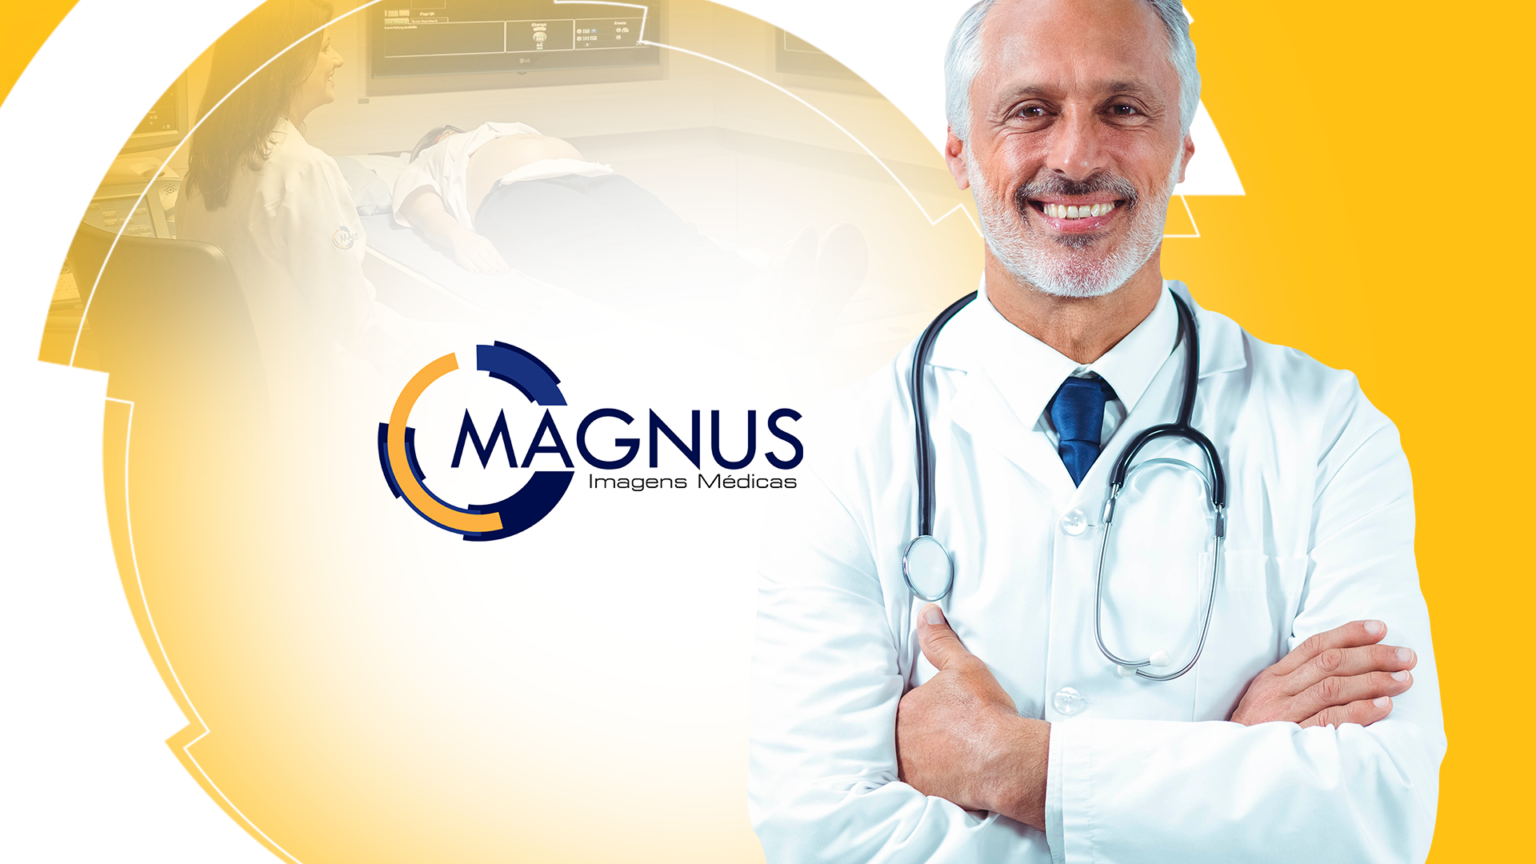 Magnus Imagens Médicas - Case de Inbound Marketing